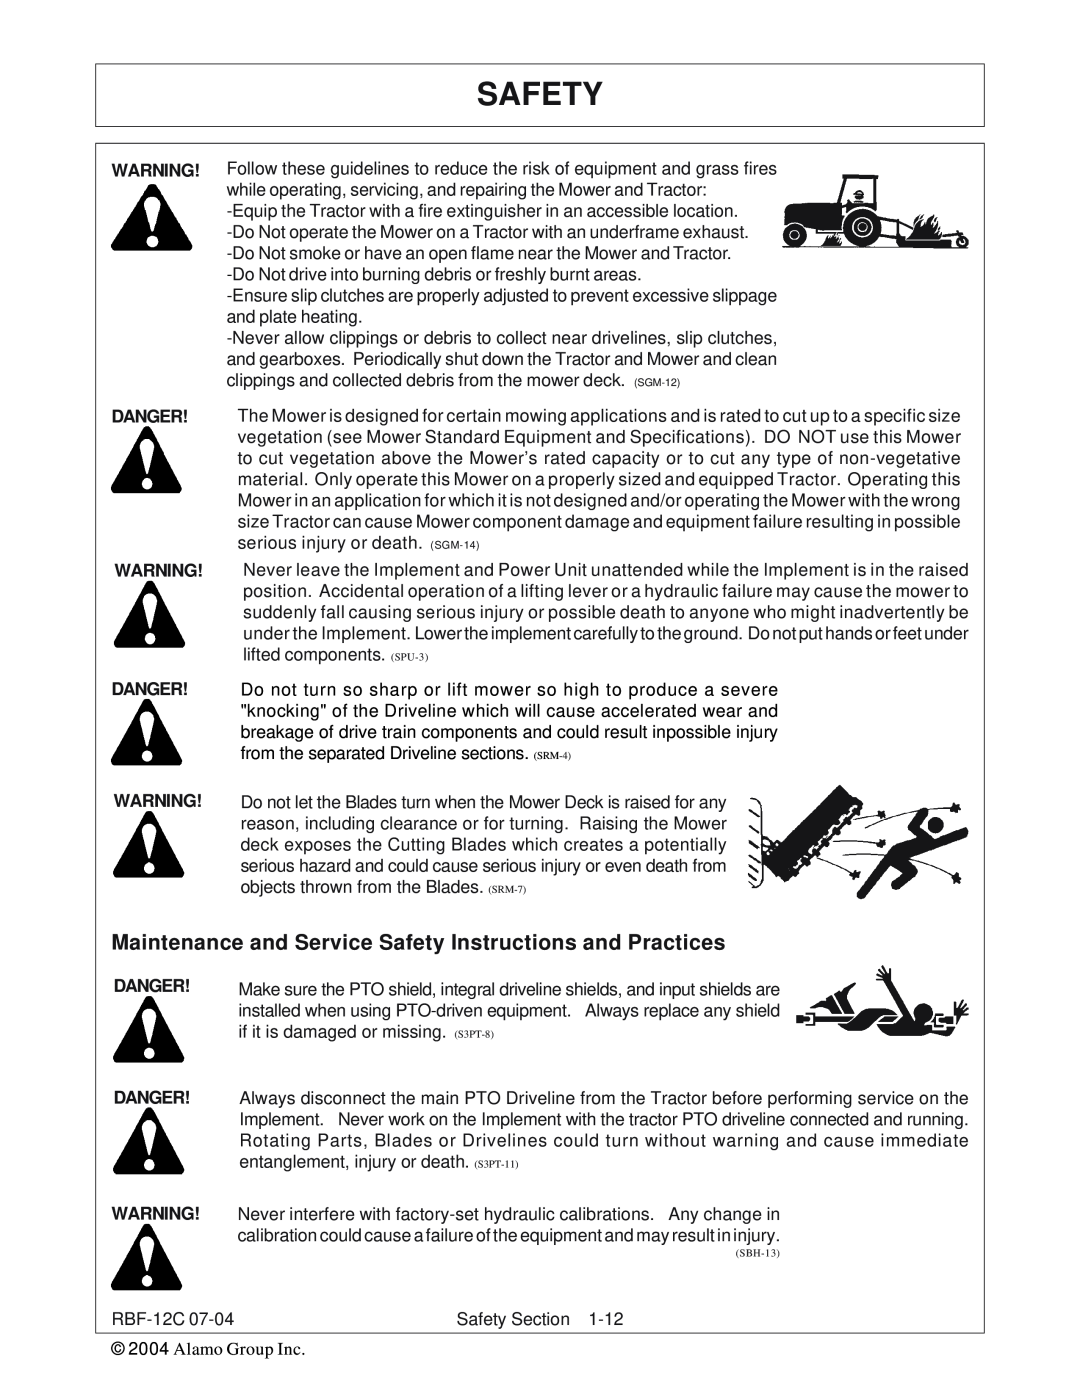 Tiger Products Co., Ltd RBF-12C manual Safety, Danger Danger 